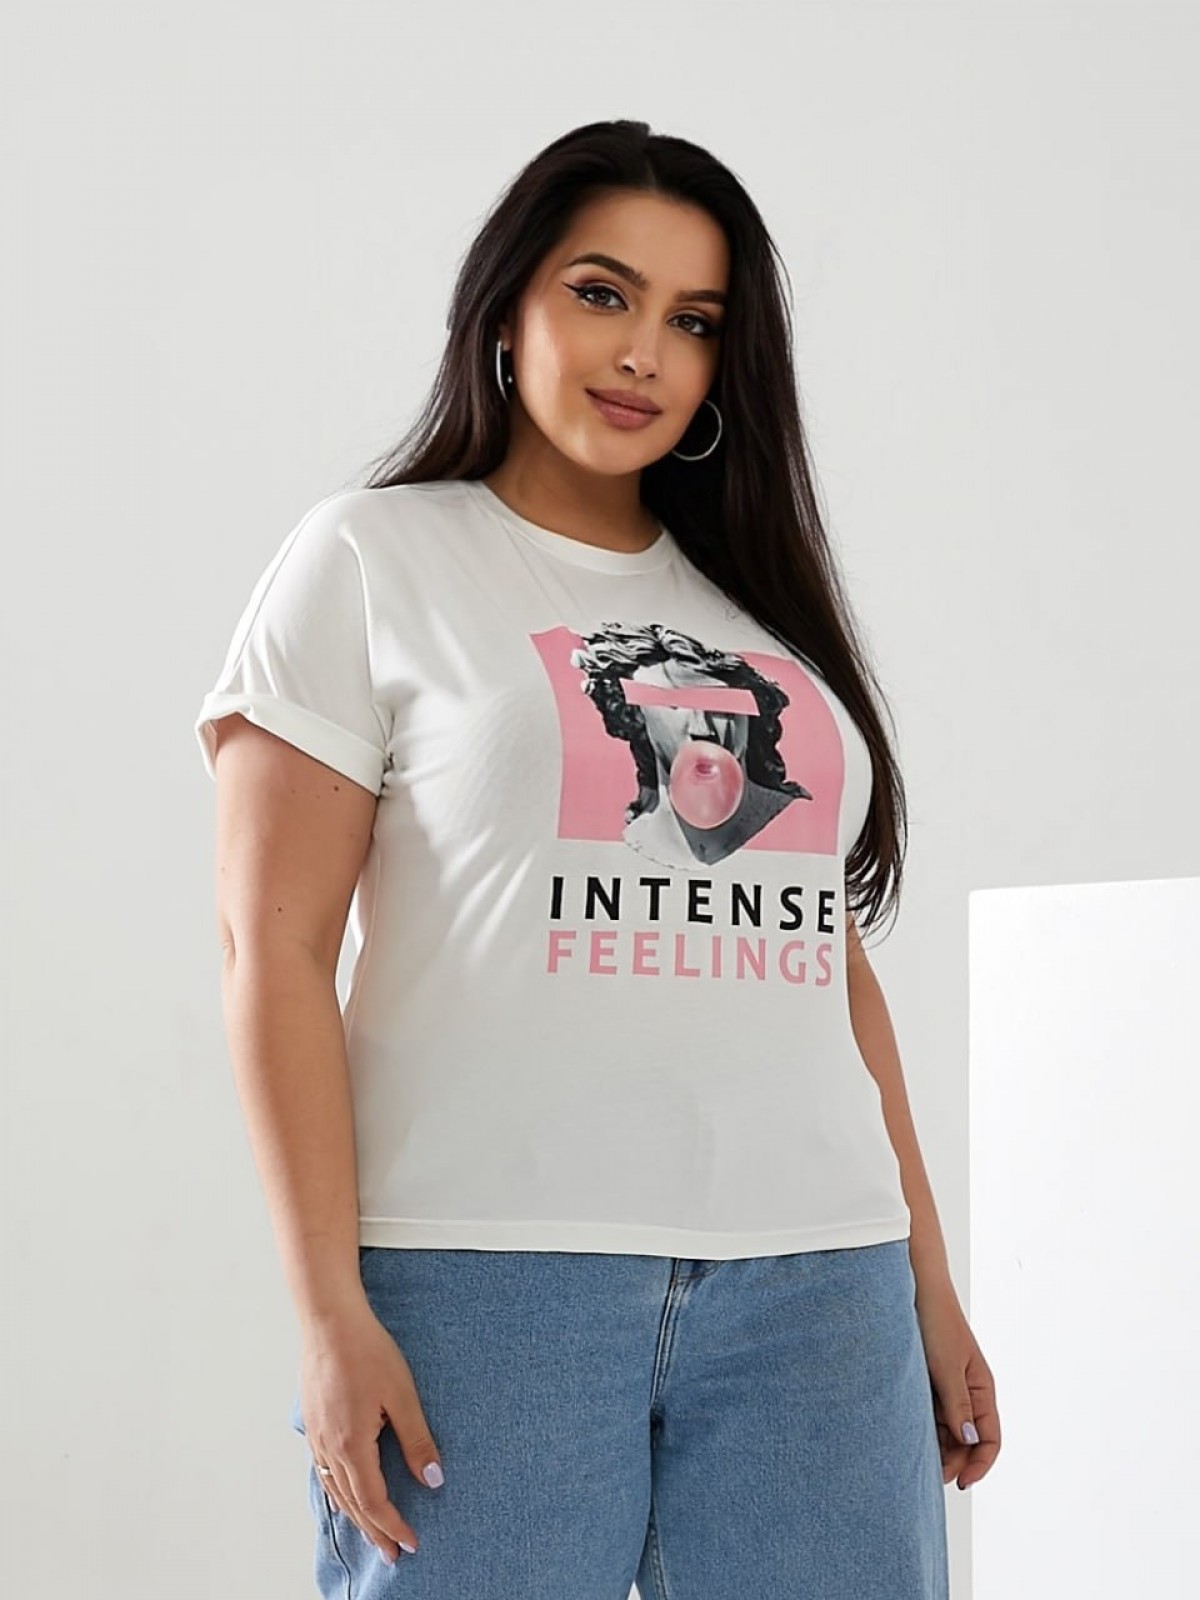 Жіноча футболка INTENSE колір молочний р.56/58 433179